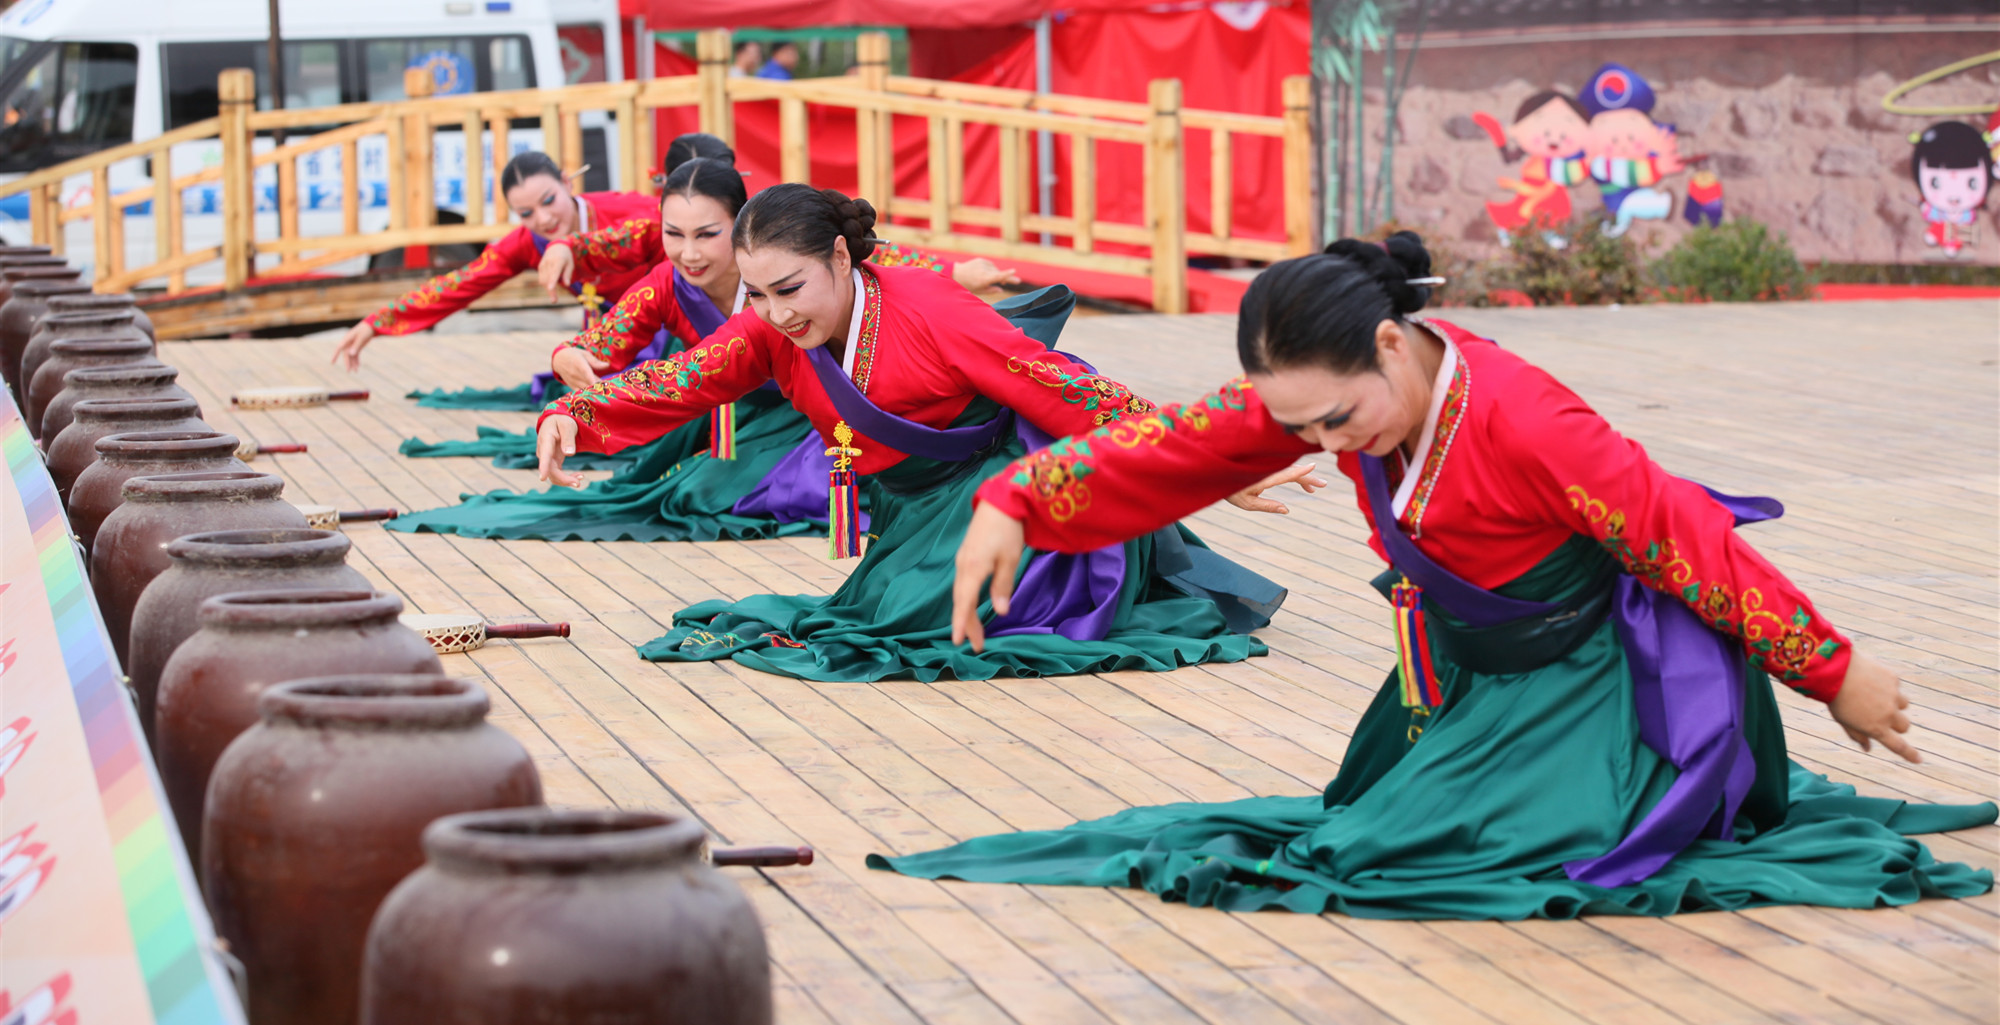 中国朝鲜族民俗园尽收民俗文化要素-中国彩虹网